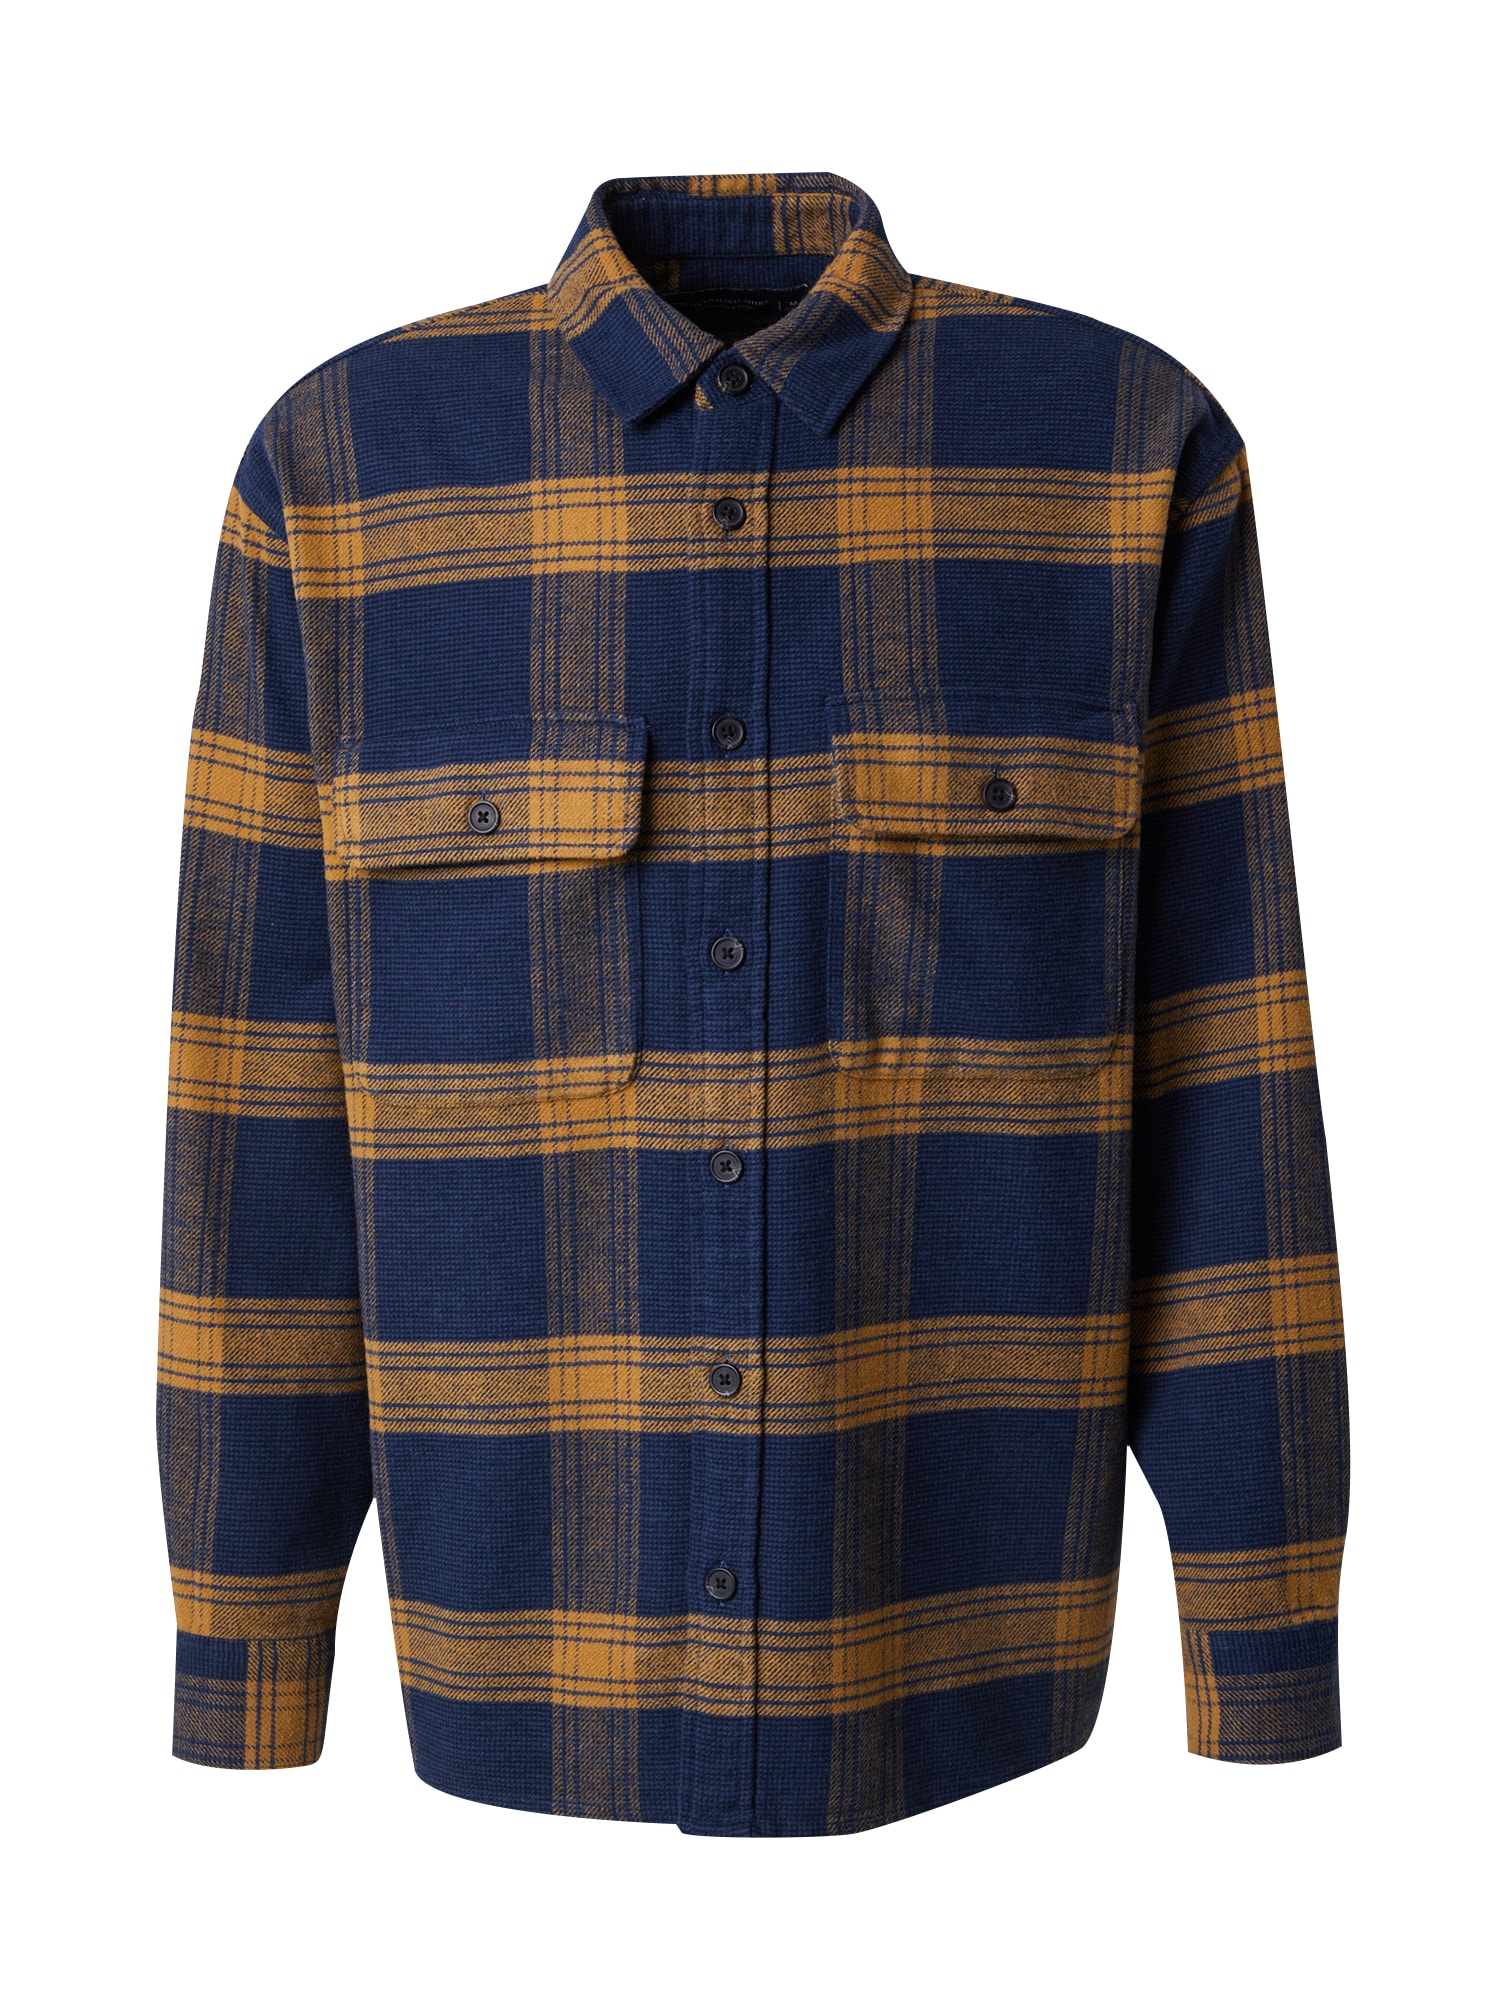 Košile Abercrombie & Fitch velbloudí / modrá